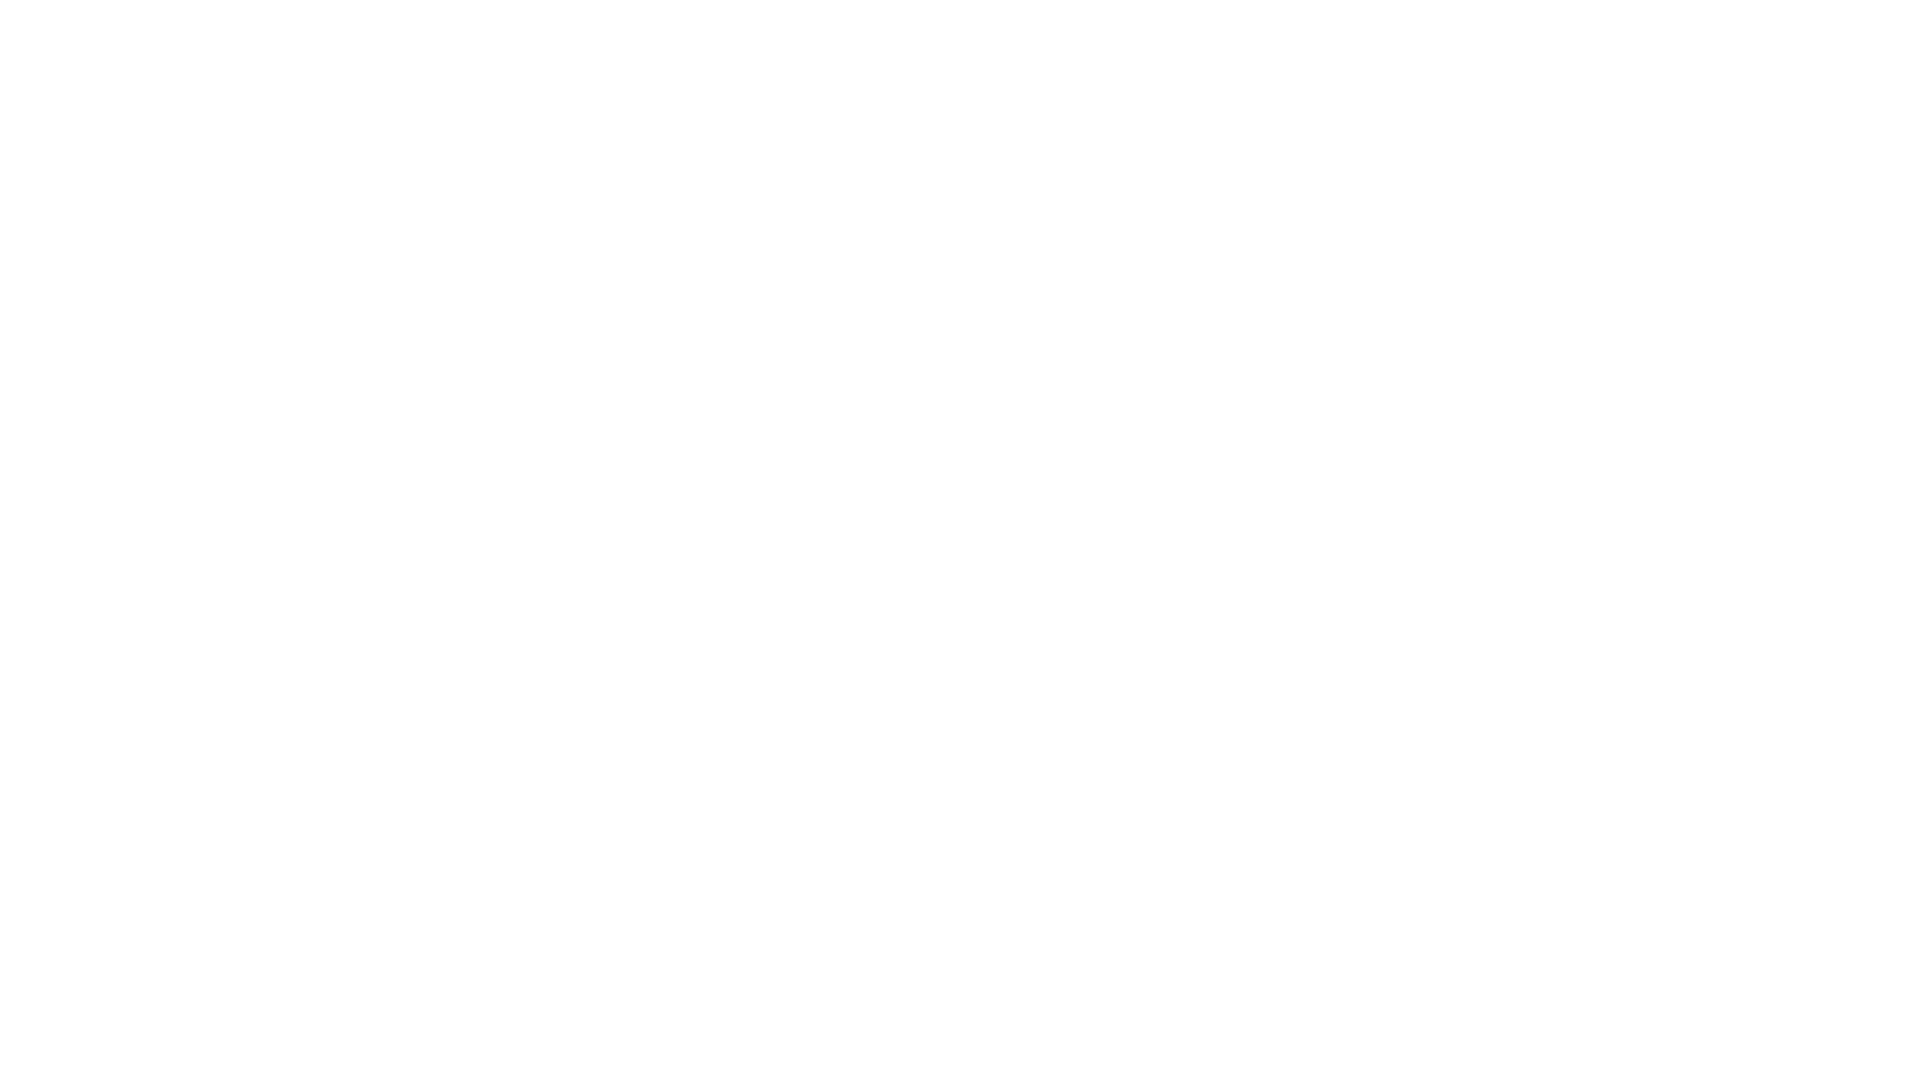 TOPSOLARES ENERGIAS RENOVÁVEIS